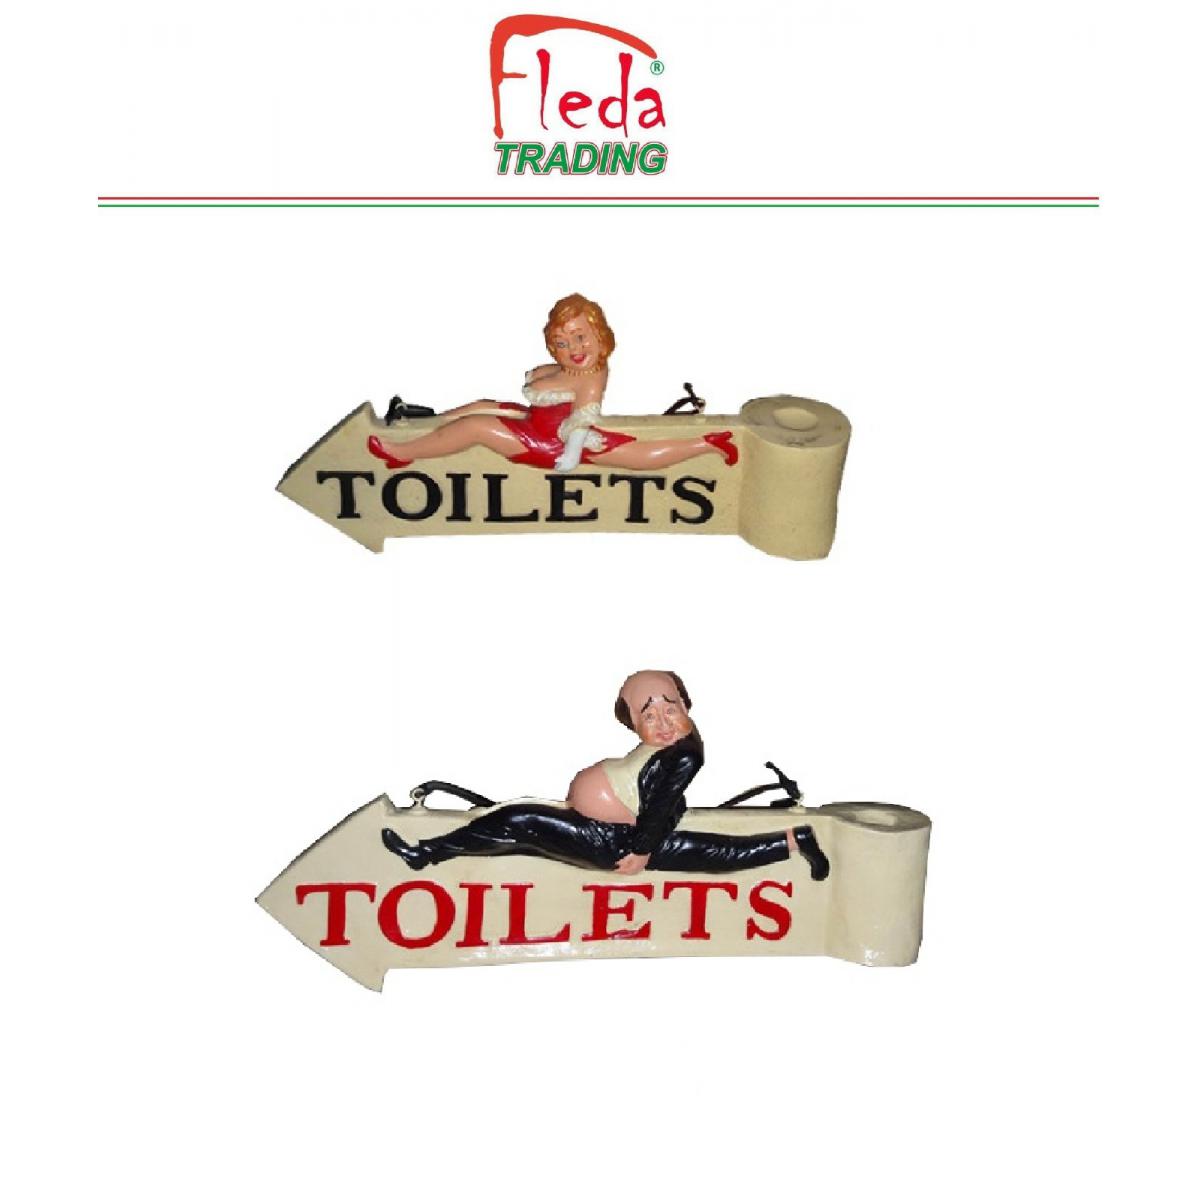 Fleda Trading - Toilette de porte extérieure - Indicateurs WC - 2 enseignes en résine HOMME / FEMME, dim.cm. 60x28h - Plaque de liège